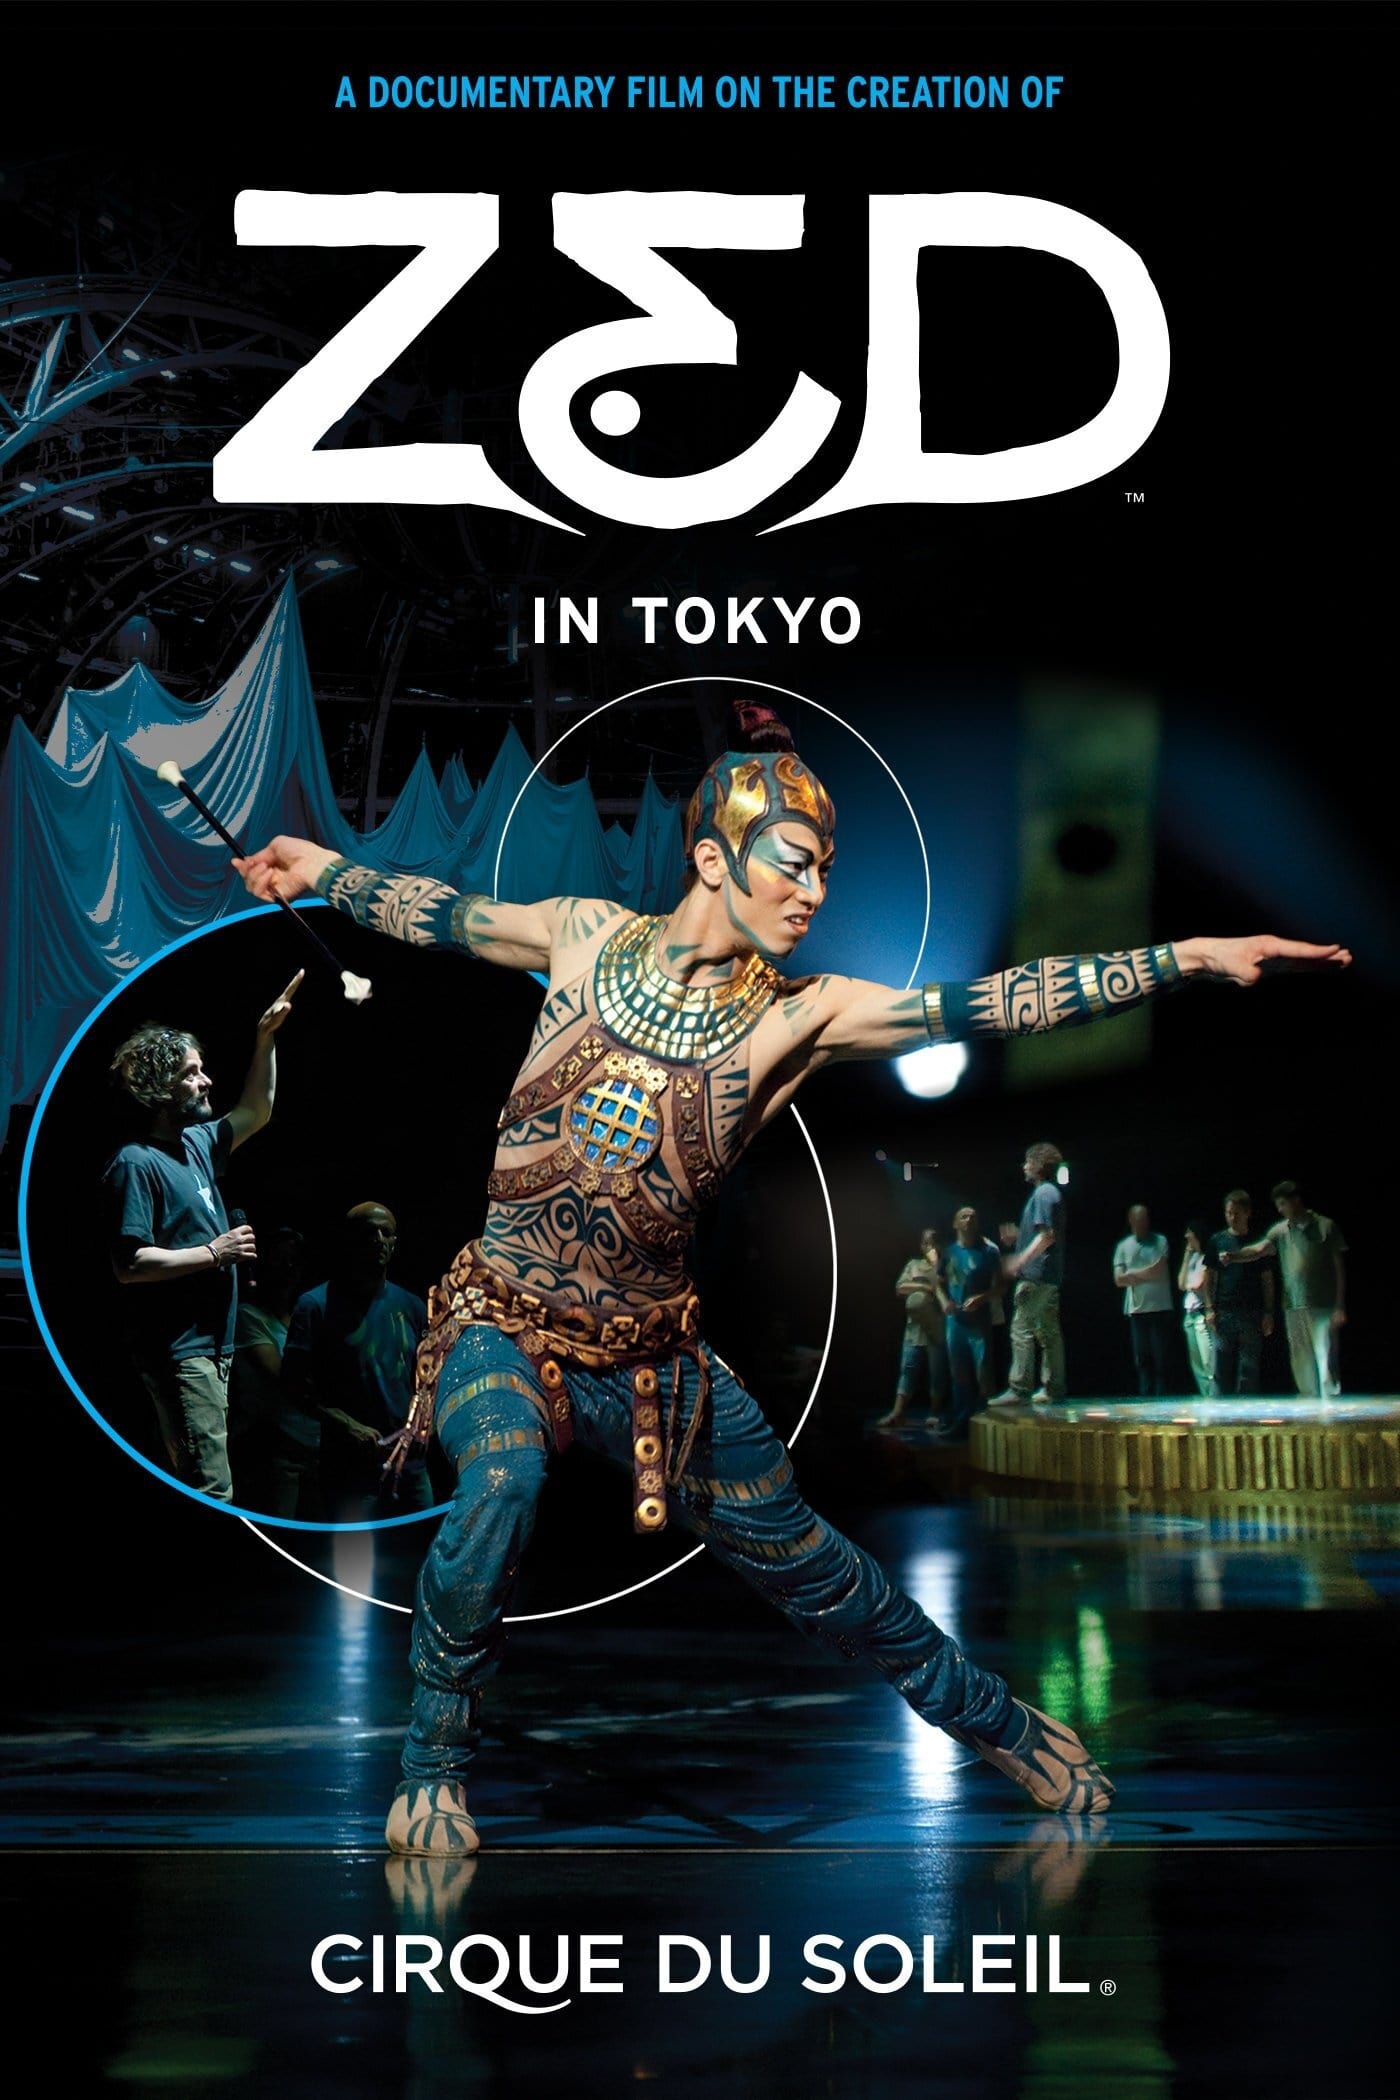 Cirque du Soleil: Zed in Tokyo